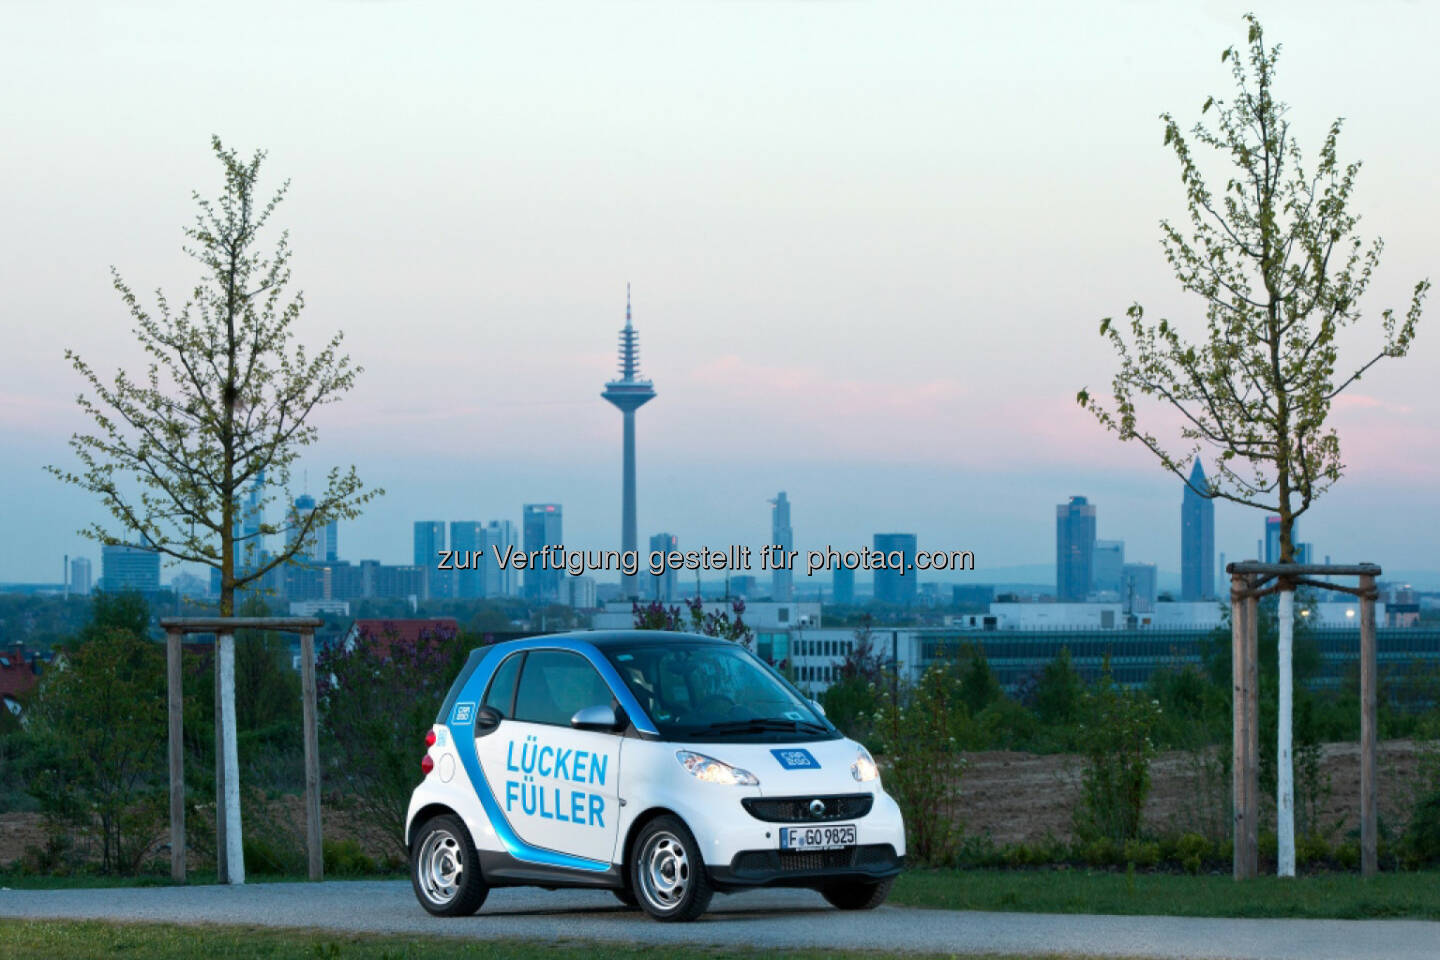 car2go: Die Mainmetropole Frankfurt wird der achte car2go Standort in Deutschland. Am 8. September startet der Marktführer im free-floating Carsharing mit einer Flotte von 250 smart fortwo Fahrzeugen.